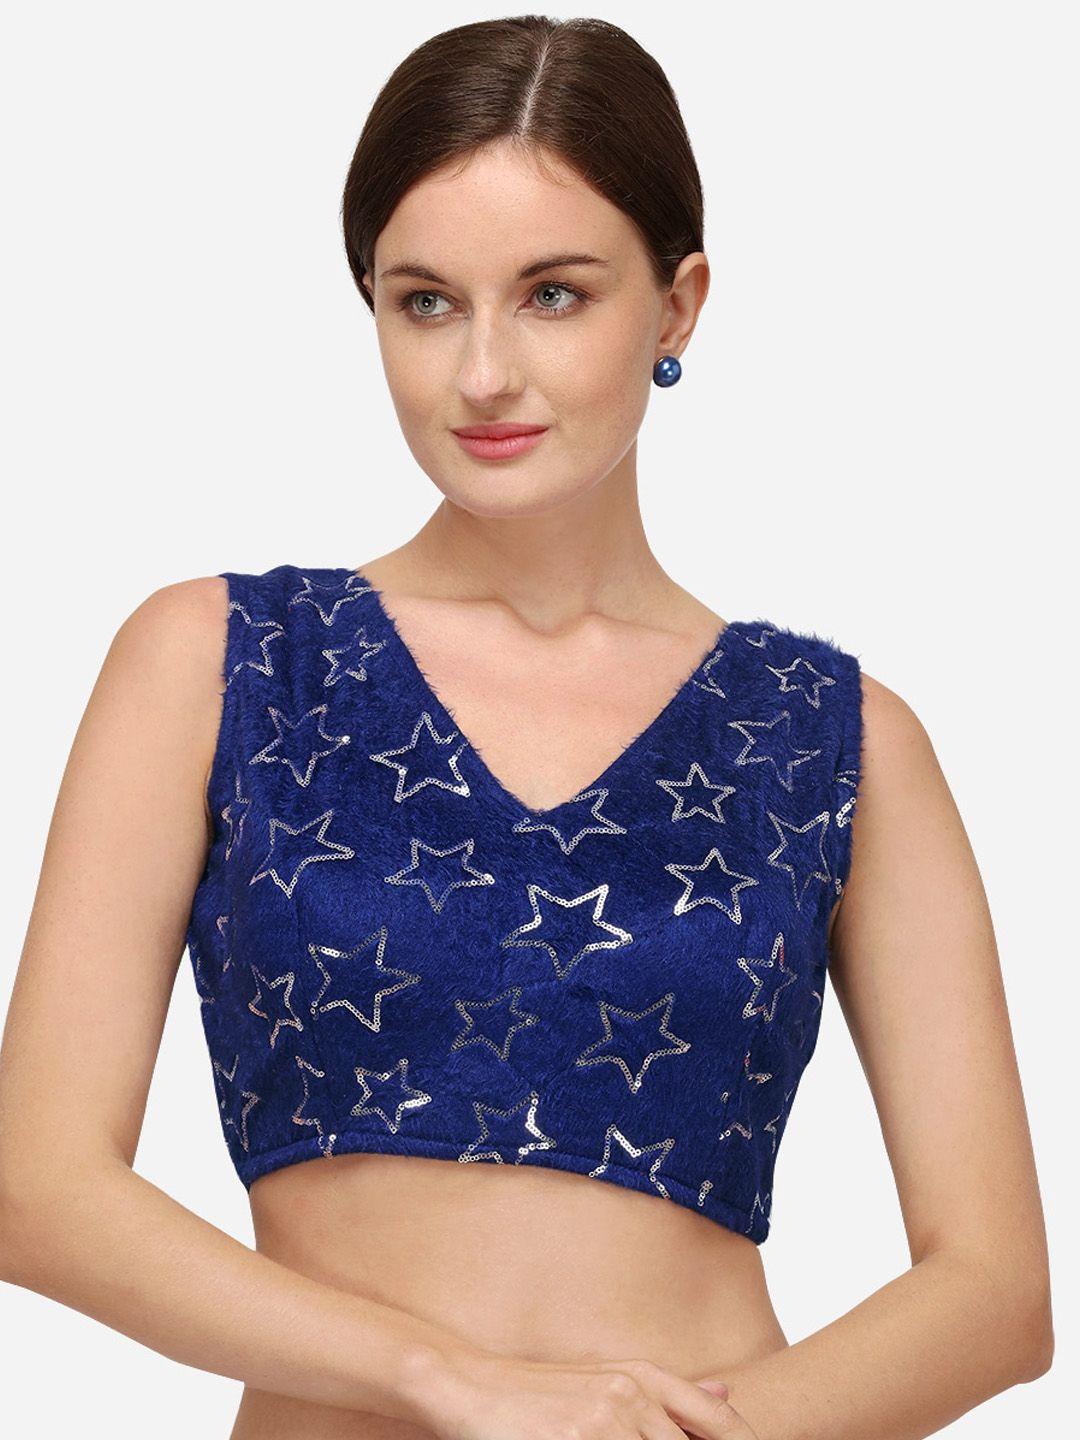 mitera embellished saree blouse